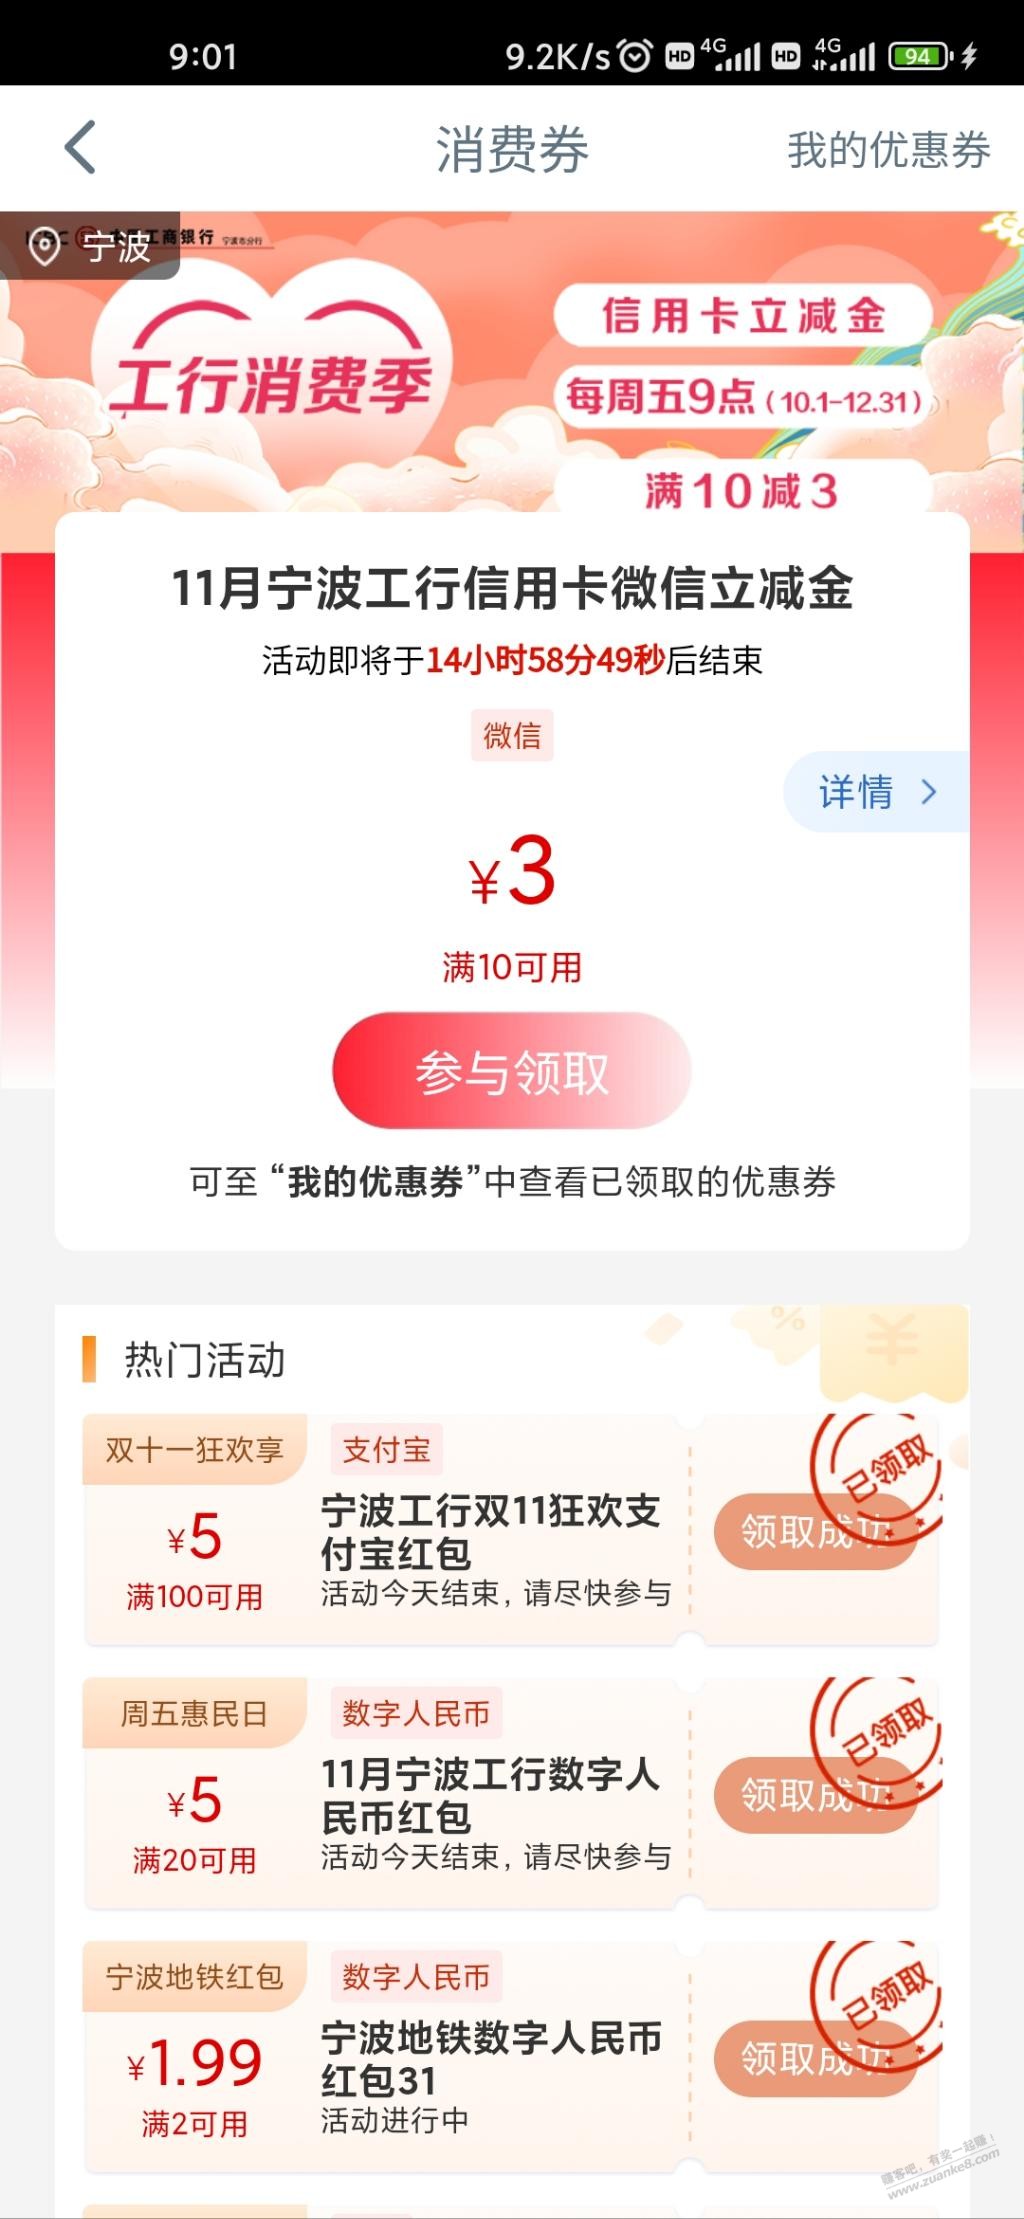 宁波 工行 领3+5+5 立减金和红包-惠小助(52huixz.com)